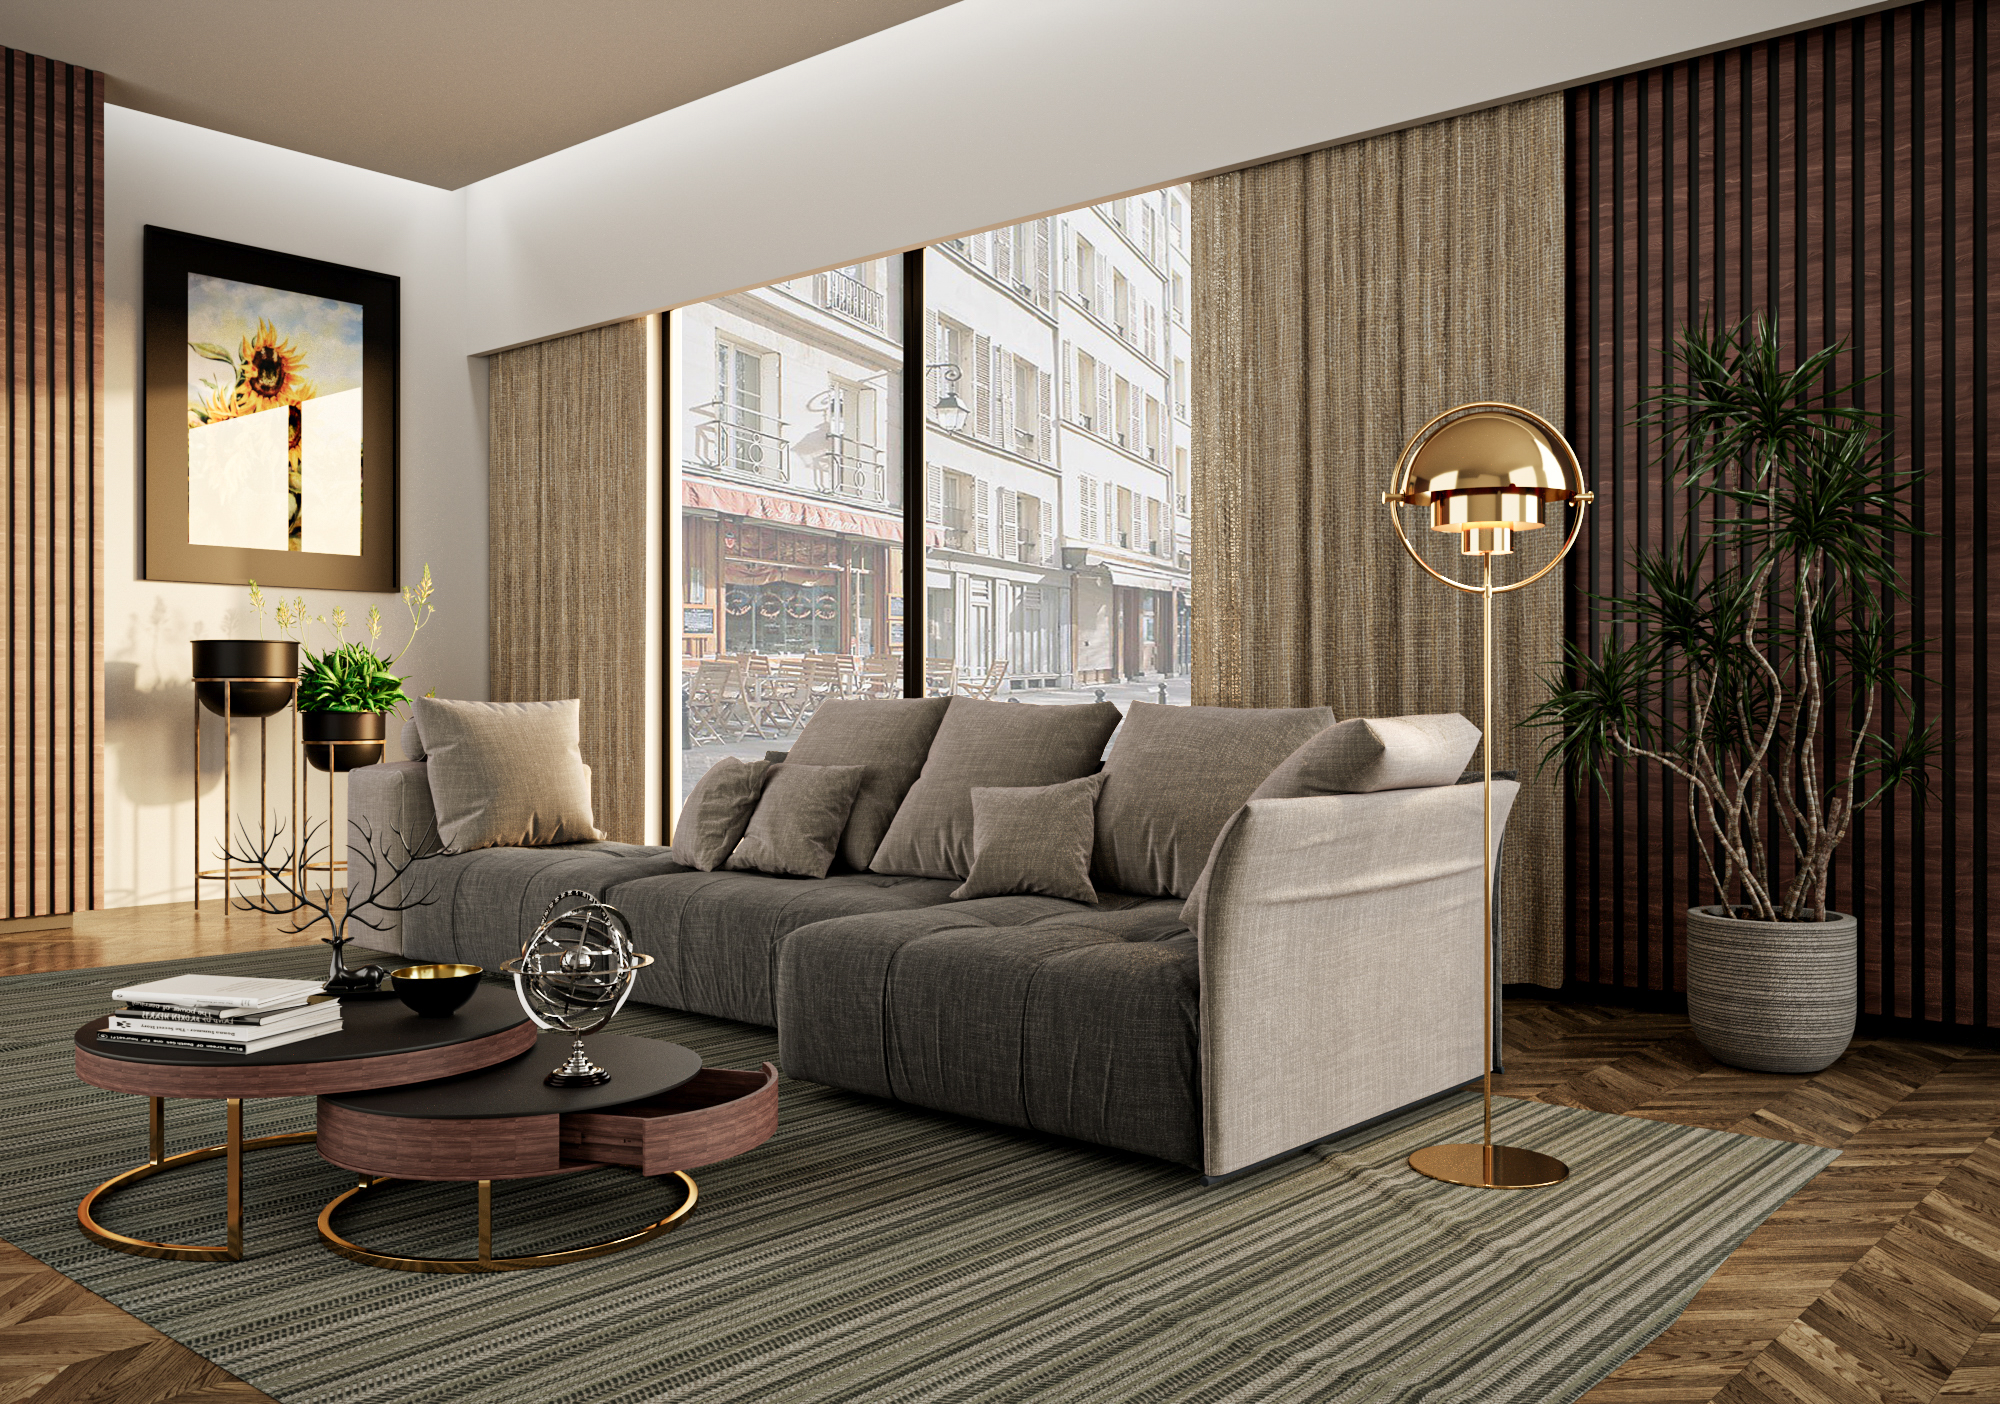 Un soggiorno moderno con un divano, un tavolino da caffè, una lampada e una pianta in vaso.